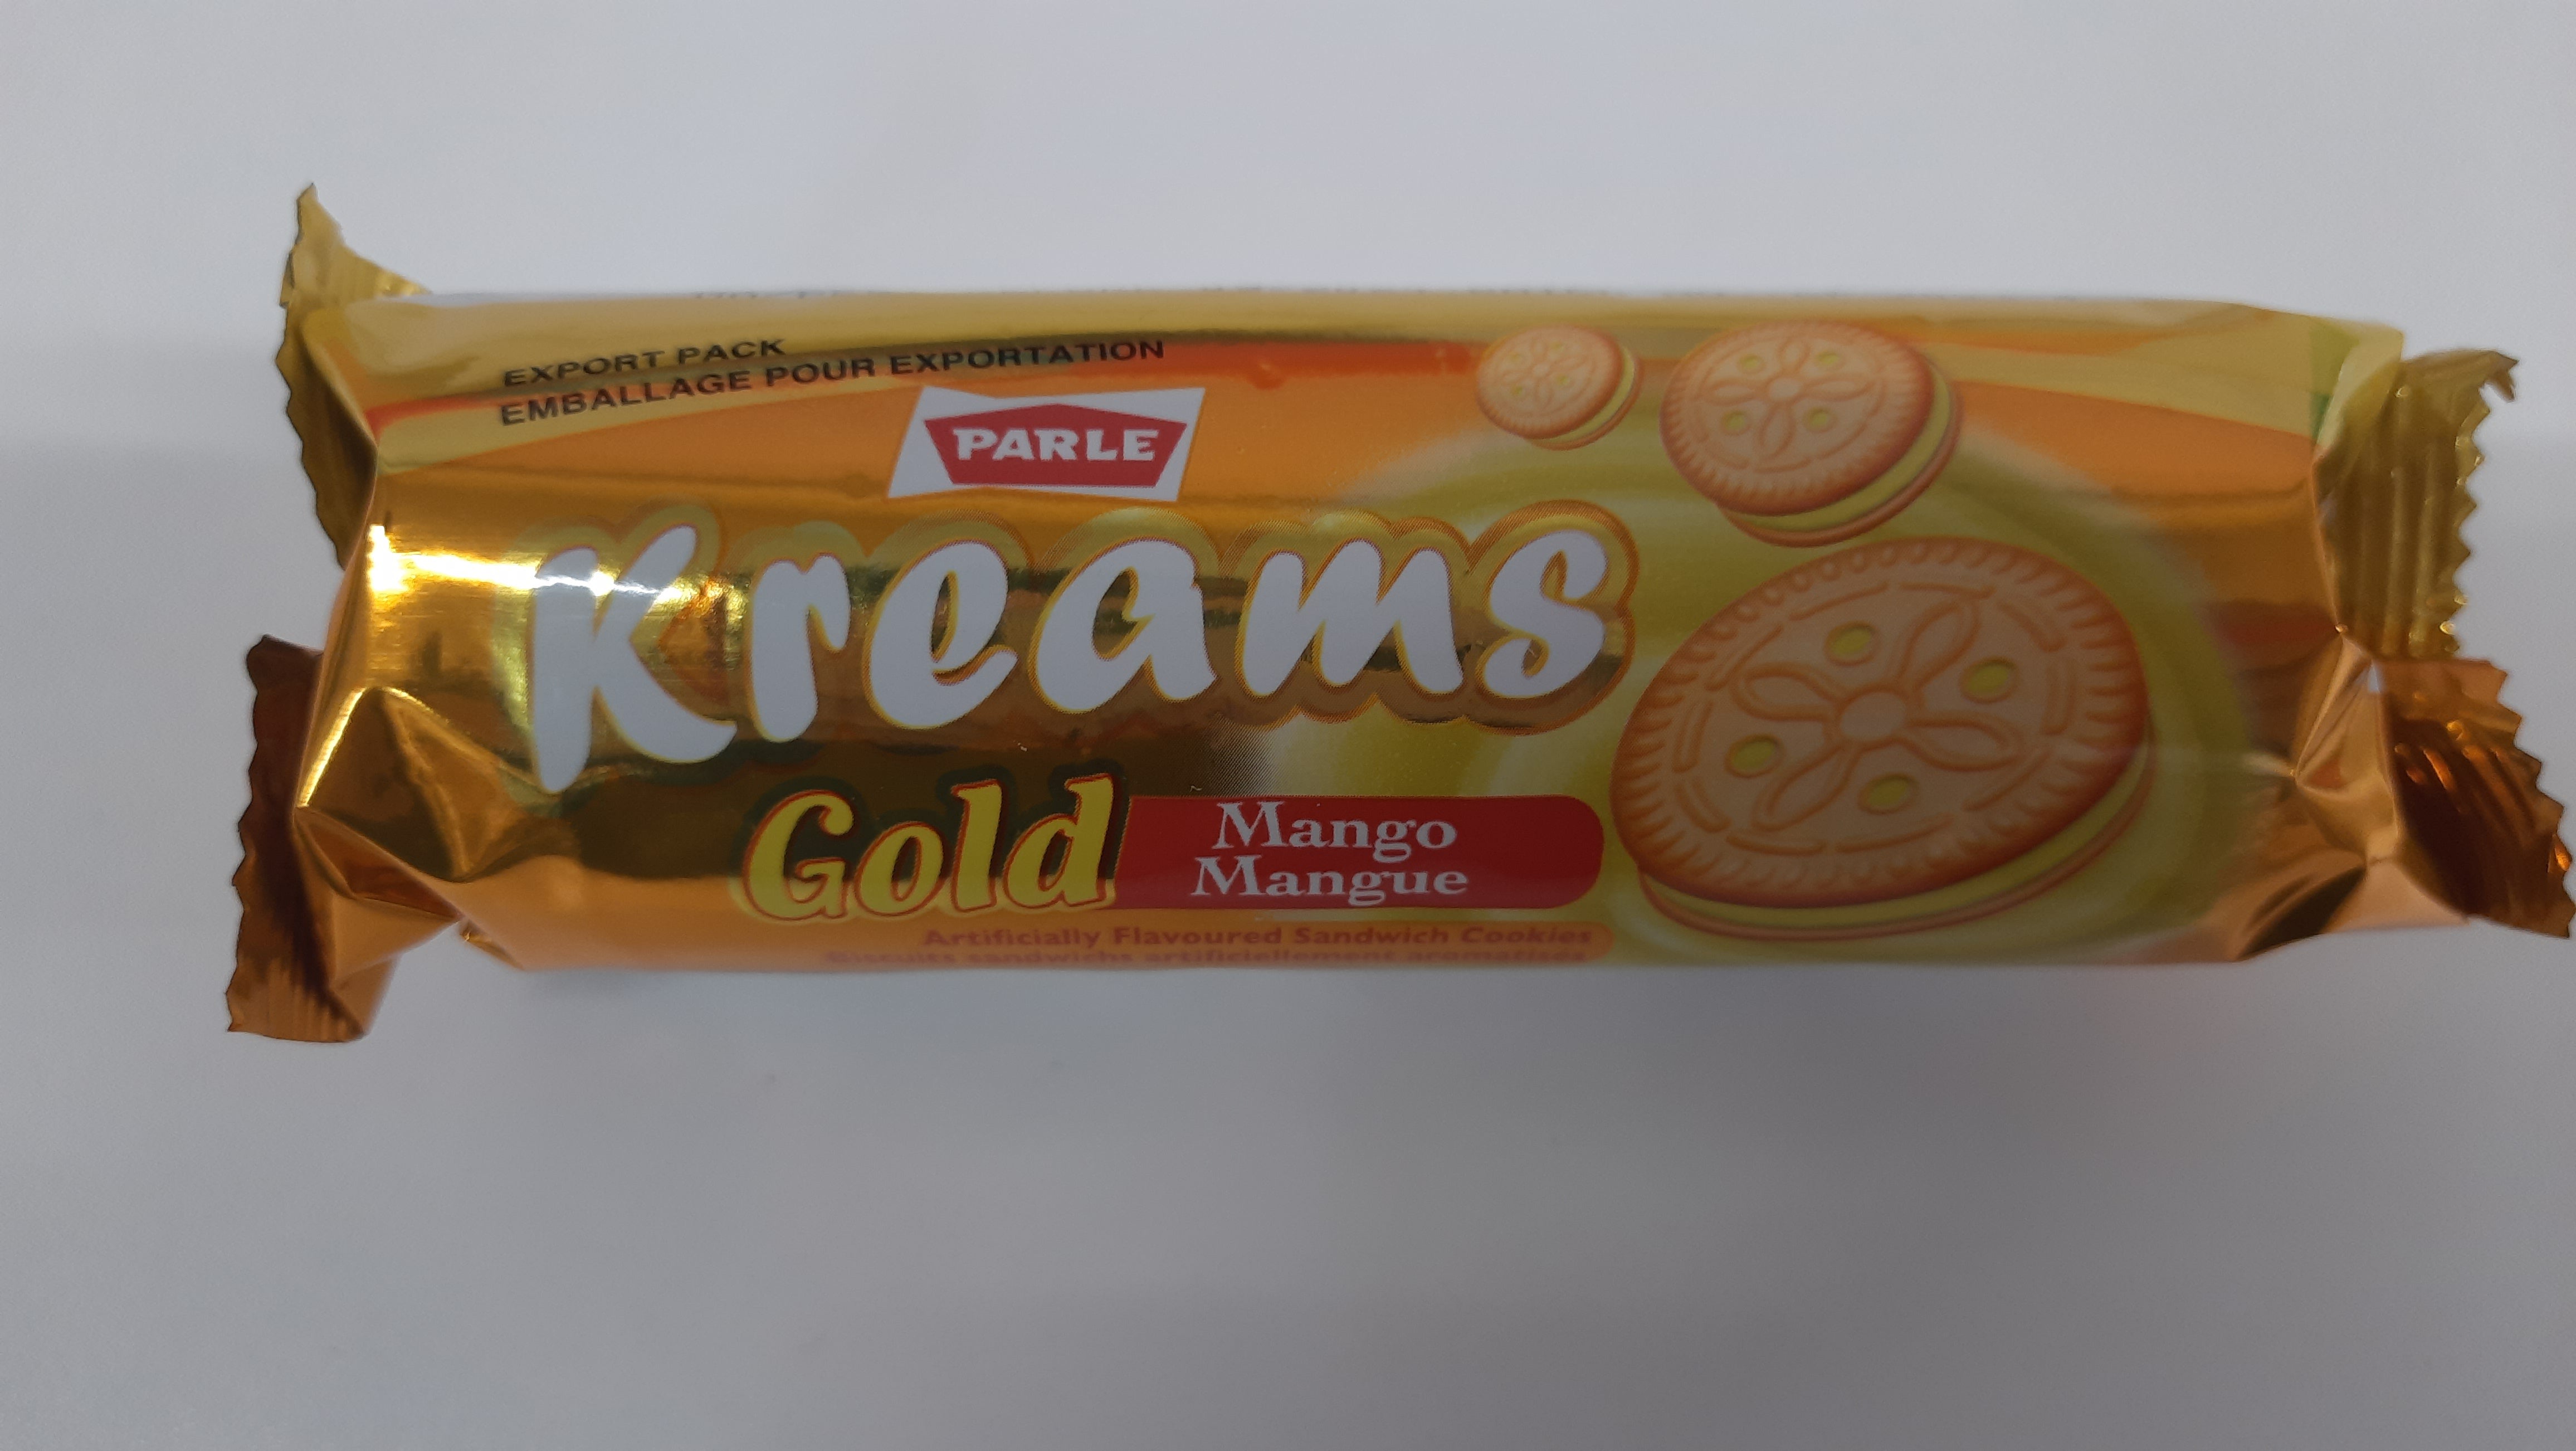 Parle - Kreams Gold Mango 66.7g